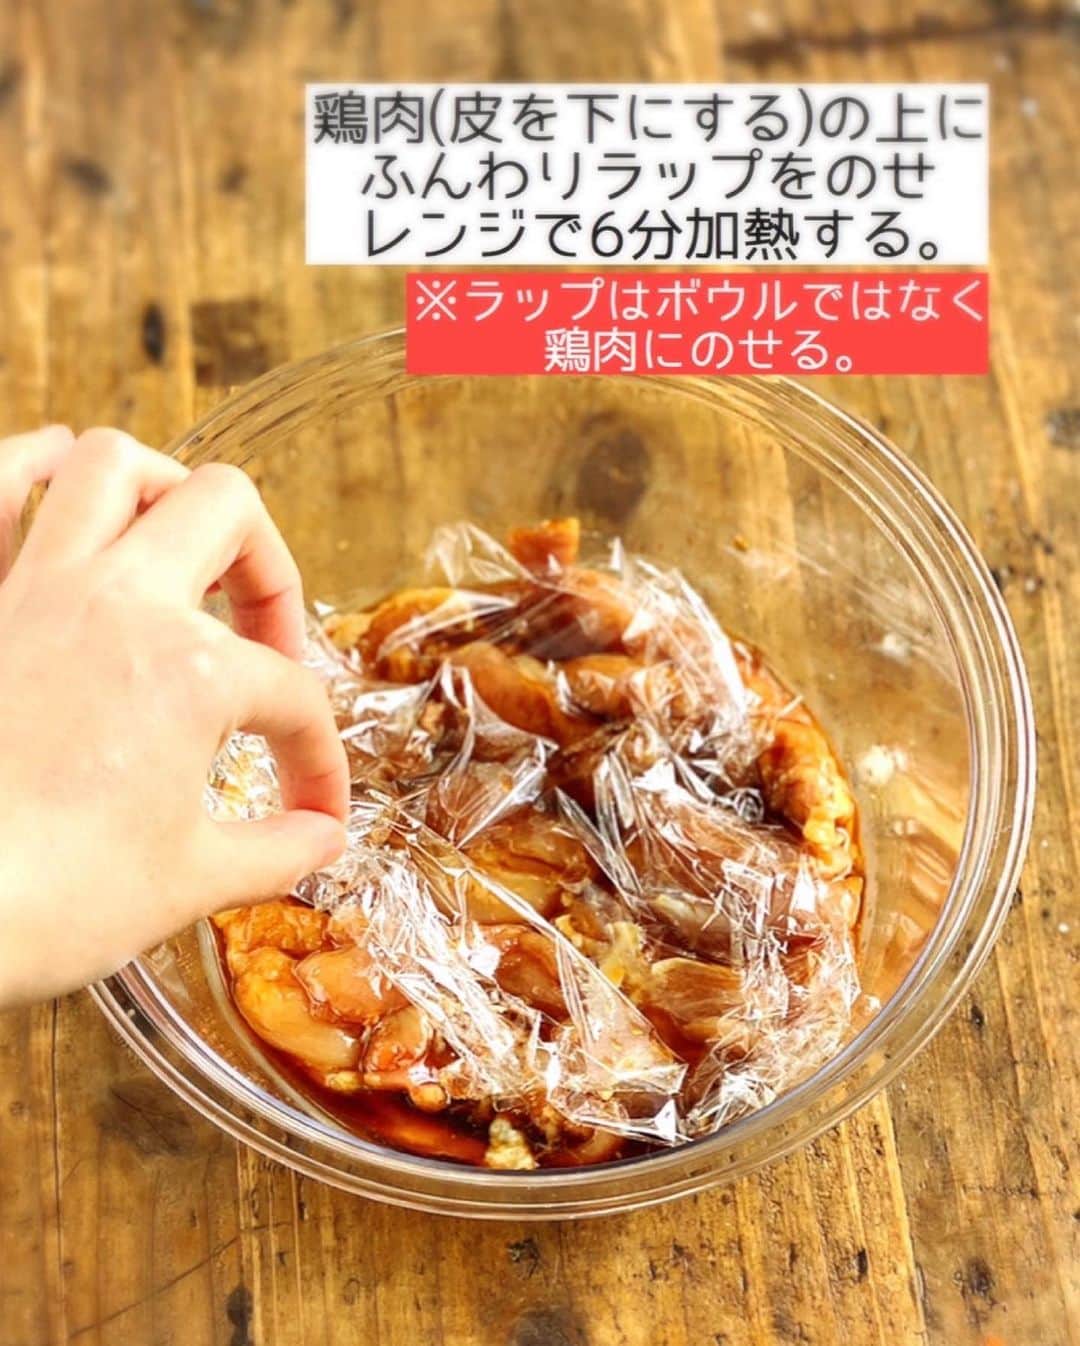 Mizuki【料理ブロガー・簡単レシピ】さんのインスタグラム写真 - (Mizuki【料理ブロガー・簡単レシピ】Instagram)「・ 【#レシピ 】ーーーーーーーーー レンジで6分！鶏チャーシュー ーーーーーーーーーーーーーーー ⁡ ⁡ ⁡ おはようございます(*^^*) ⁡ 今日ご紹介させていただくのは \ レンジで6分！鶏チャーシュー / (再掲載です✨) ⁡ 鶏肉に調味料を揉み込んで レンチンするだけの超簡単レシピ！ ⁡ 今まで何度も作りましたが 今回のレシピが一番おすすめ♩ もも肉でも、むね肉でも 同じように作れますよ〜(*´艸`) ⁡ 日持ちして冷凍もできるので よかったらお試し下さいね♩ お弁当にもおすすめです(*^^*) ⁡ ⁡ ⁡ ＿＿＿＿＿＿＿＿＿＿＿＿＿＿＿＿＿＿＿＿＿ 【2〜3人分】 鶏もも肉(鶏むね肉)...大1枚(300g) ●砂糖・醤油・酒...各大1.5 ●オイスターソース...大1/2 ●生姜チューブ...2cm ⁡ 1.鶏肉は身の厚い部分を開いて均等にし、全体をフォークで刺す。耐熱ボウルに入れ、●を加えてよく揉み込む。 2.鶏肉(皮を下にする)の上にふんわりラップをのせ、600Wのレンジで6分加熱する。 3.粗熱を取り、食べやすい大きさに切って器に盛る。 ￣￣￣￣￣￣￣￣￣￣￣￣￣￣￣￣￣￣￣￣￣ ⁡ ⁡ ⁡ 《ポイント》 ♦︎鶏肉は皮を下にして加熱して下さい♩ ♦︎ラップはボウルにかけず、鶏肉の上にふんわりのせて下さい♩ ♦︎粗熱を取っている間に味が染み、綺麗に色付きます♩時間に余裕があれば一度冷ますと尚◎(皮がたれに浸かる状態にしておく) ♦︎冷蔵庫で4日程保存OK！冷凍も◎ ⁡ ⁡ ⁡ ⁡ ⁡ ⁡ ⁡ ⁡ \ 新刊予約開始しました /(9月24日発売) ⁡ 🔹🔹🔹🔹🔹🔹🔹🔹🔹🔹🔹🔹 今日のごはんこれに決まり！ #Mizukiのレシピノート 決定版 500品 🔹🔹🔹🔹🔹🔹🔹🔹🔹🔹🔹🔹 ⁡ 総レシピ6000点の中からレシピを厳選！ まさかの【500レシピ掲載】しました⭐️ (もはや辞典...) ⁡ 肉や魚のメインおかずはもちろん 副菜、丼、麺、スープ、お菓子 ハレの日のレシピ、鍋のレシピまで 全てこの一冊で完結！！ ⁡ ⁡ 🎁新刊予約でエプロンが当たる🎁 プレゼントキャンペーン実施中 ￣￣￣￣￣￣￣￣￣￣￣￣￣￣￣￣￣￣￣￣￣ 【応募方法】 ❶1枚目に表紙画像 2枚目にAmazonで予約したことがわかる画像 (どちらもスクショでOK)を貼りつける。 ❷ハッシュタグ【#Mizukiのレシピノート 】 をつけて投稿！ ￣￣￣￣￣￣￣￣￣￣￣￣￣￣￣￣￣￣￣￣￣￣ ⁡ ⁡ ⁡ ⁡ ⁡ ＿＿＿＿＿＿＿＿＿＿＿＿＿＿＿＿ 🟥YouTube 料理動画配信中🟥 ￣￣￣￣￣￣￣￣￣￣￣￣￣￣￣￣ 料理とお菓子の簡単レシピを ご紹介しています☺️💓 ⁡ 【奇跡のキッチン】で検索🔍 (ハイライトからも飛べます✨) ￣￣￣￣￣￣￣￣￣￣￣￣￣￣￣￣ ⁡ ⁡ ⁡ ＿＿＿＿＿＿＿＿＿＿＿＿＿＿＿＿ 🔶🔶recipe book🔶🔶 ￣￣￣￣￣￣￣￣￣￣￣￣￣￣￣￣ ホケミレシピの決定版♩ \はじめてでも失敗しない/ 📙#ホットケーキミックスのお菓子 ⁡ NHKまる得マガジンテキスト☆ #ホットケーキミックス で ⁡ 📗絶品おやつ&意外なランチ ⁡ しんどくない献立、考えました♩ \𝟣𝟧分でいただきます/ 📕#Mizukiの2品献立 ⁡ 和食をもっとカジュアルに♩ \毎日のごはんがラクになる/ 📘#Mizukiの今どき和食  ＿＿＿＿＿＿＿＿＿＿＿＿＿＿＿＿＿ ⁡ ⁡ ⁡ ⁡ #レンジで絶品鶏チャーシューm #鶏チャーシュー #レンジ #お弁当 #作り置き #mizuki #簡単レシピ #時短レシピ #節約レシピ #料理 #料理初心者  #時短ごはん #節約ごはん #フーディーテーブル #おうちごはん #デリスタグラマー #おうちごはんlover #料理好きな人と繋がりたい #写真好きな人と繋がりたい #foodpick#cooking#recipe #foodporn」8月27日 7時21分 - mizuki_31cafe